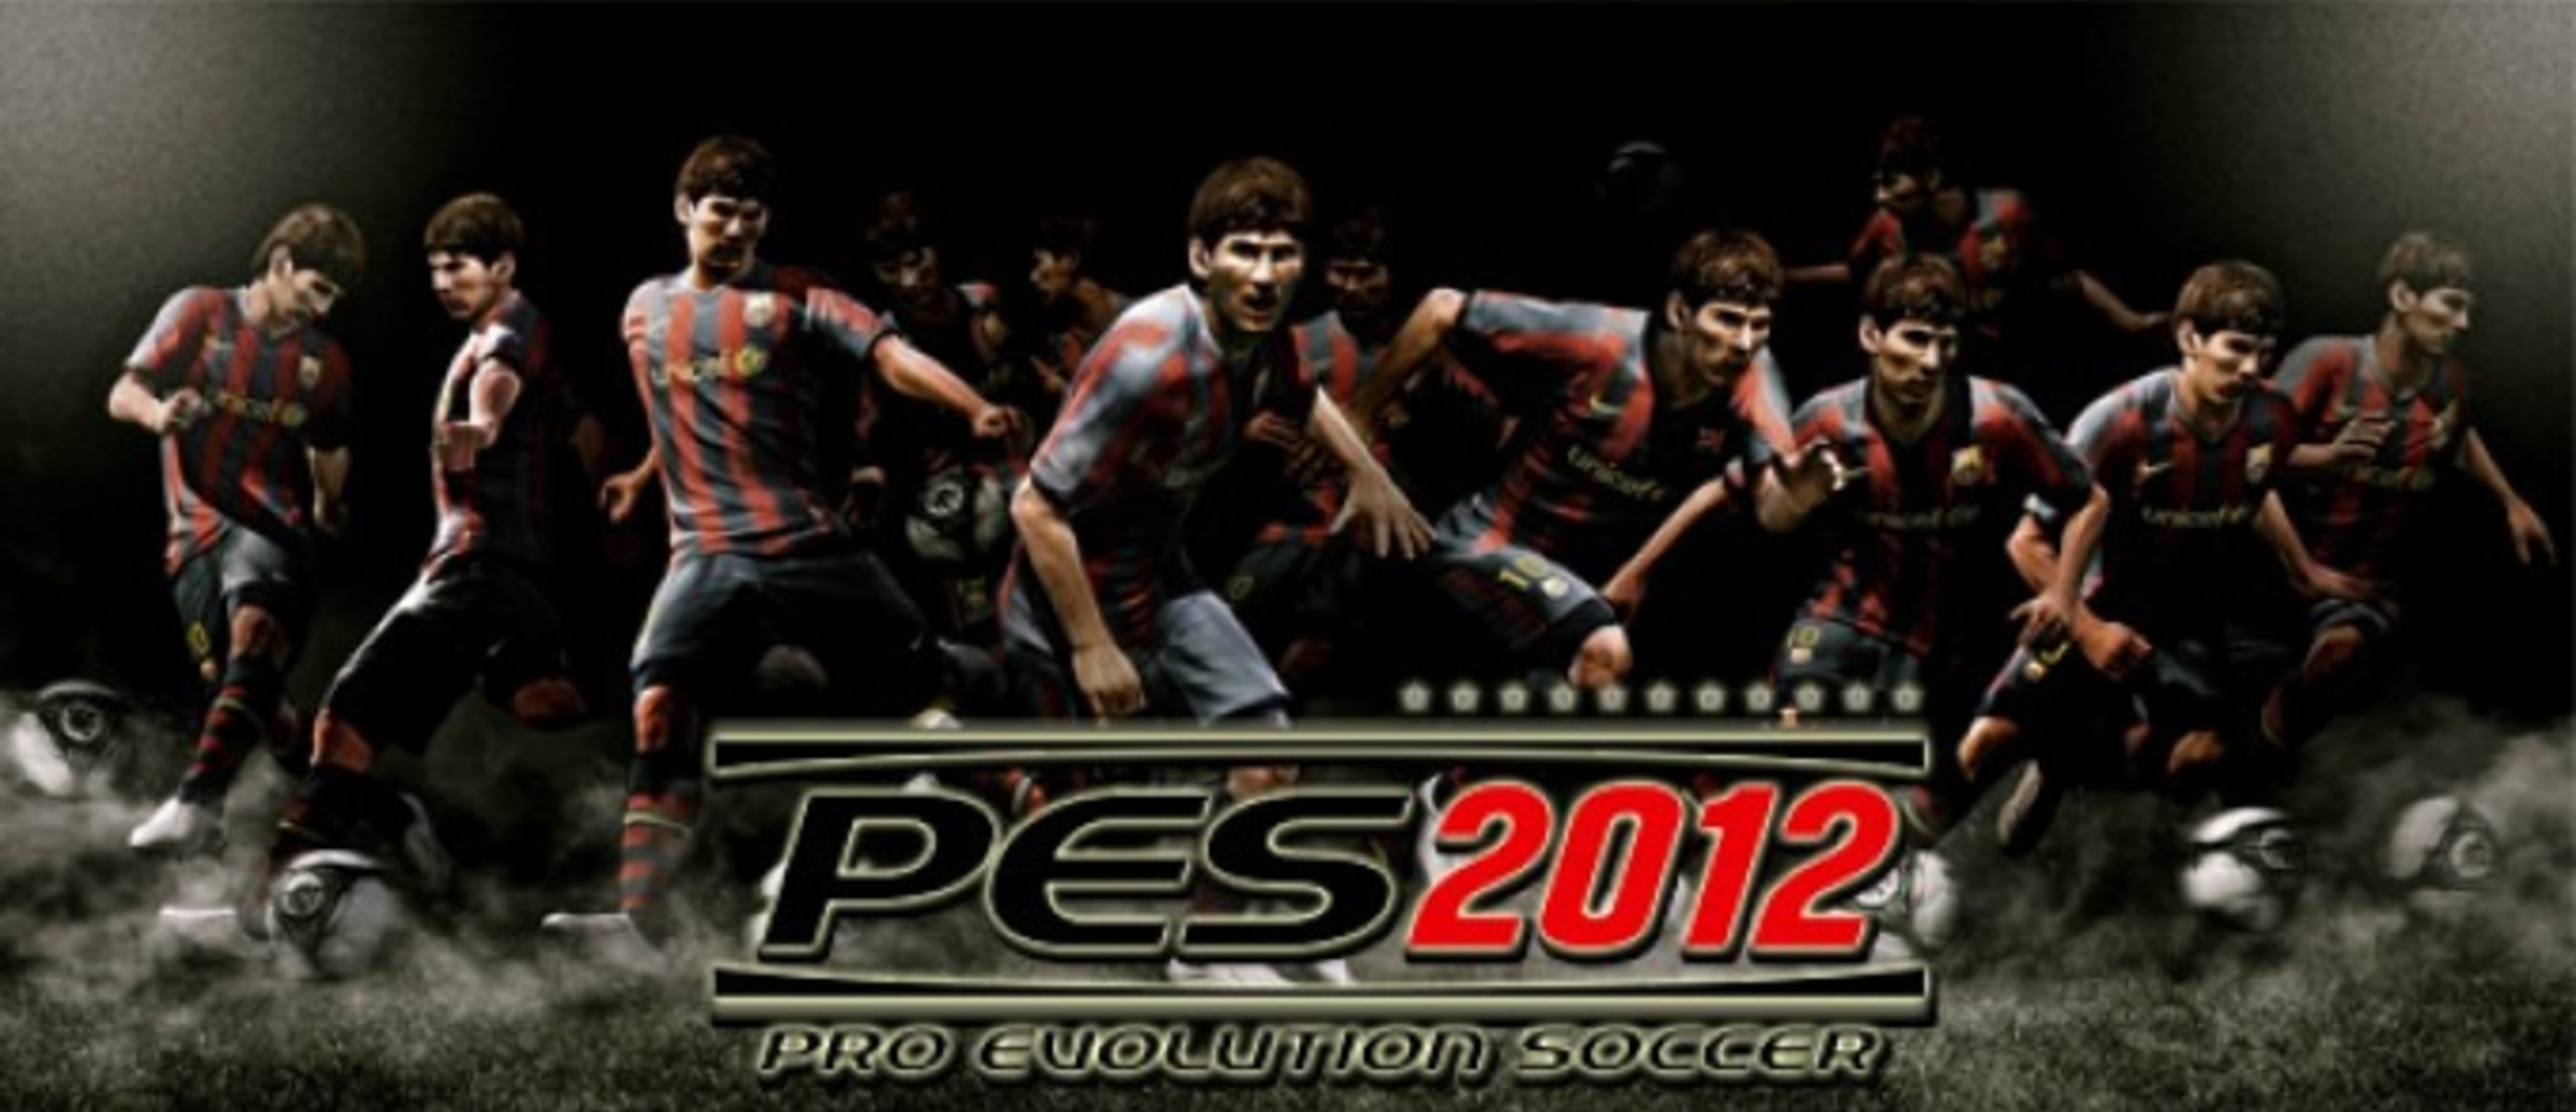 Games pro 11. PES 2011 ps3. Арты PES 2011. PES 10 обой. Обой пес 2011.